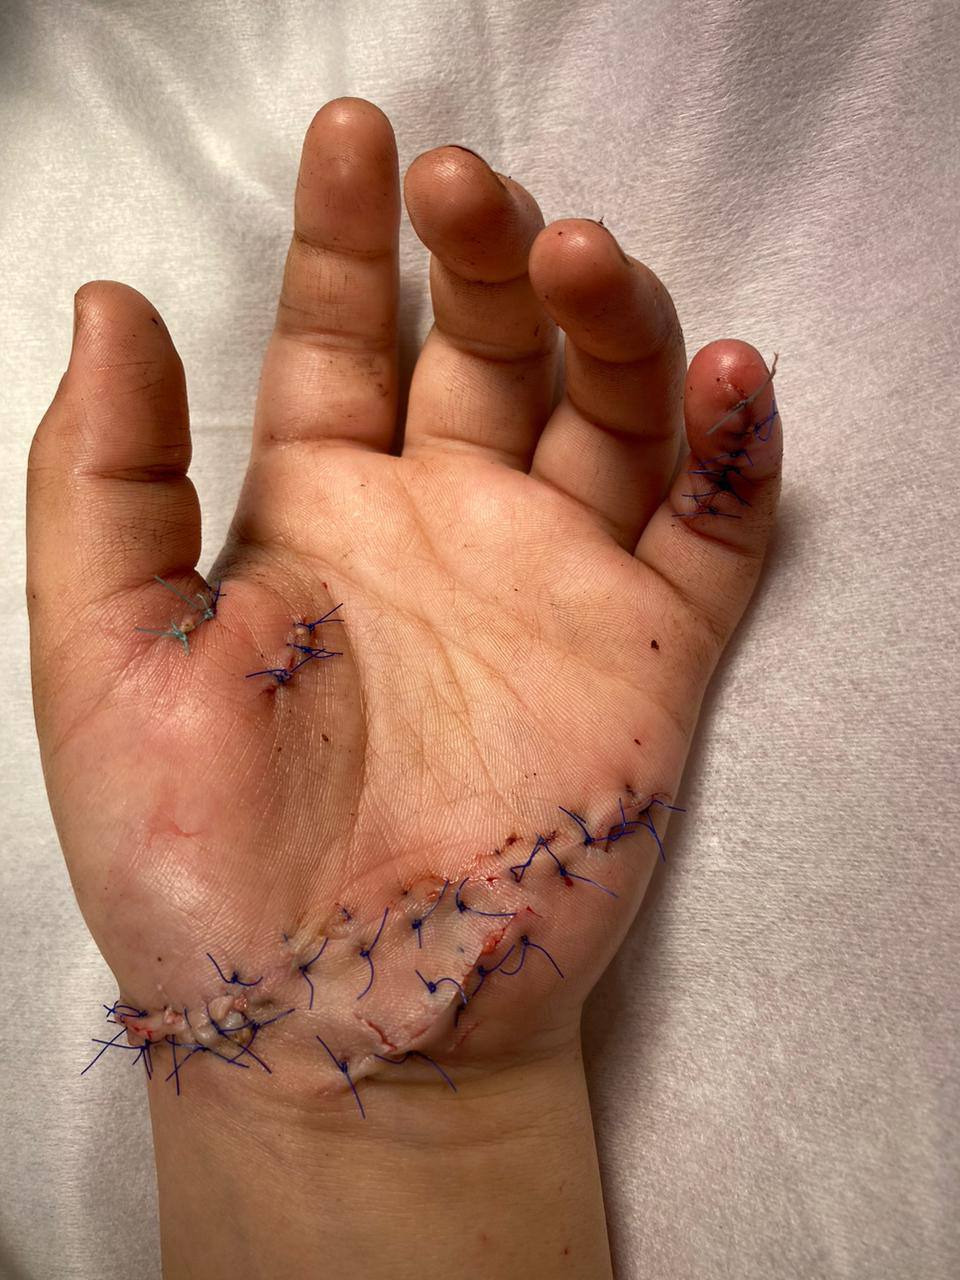 Микрохирурги Педиатрического университета 10 часов оперировали ребёнка, рука которого попала в блендер 4